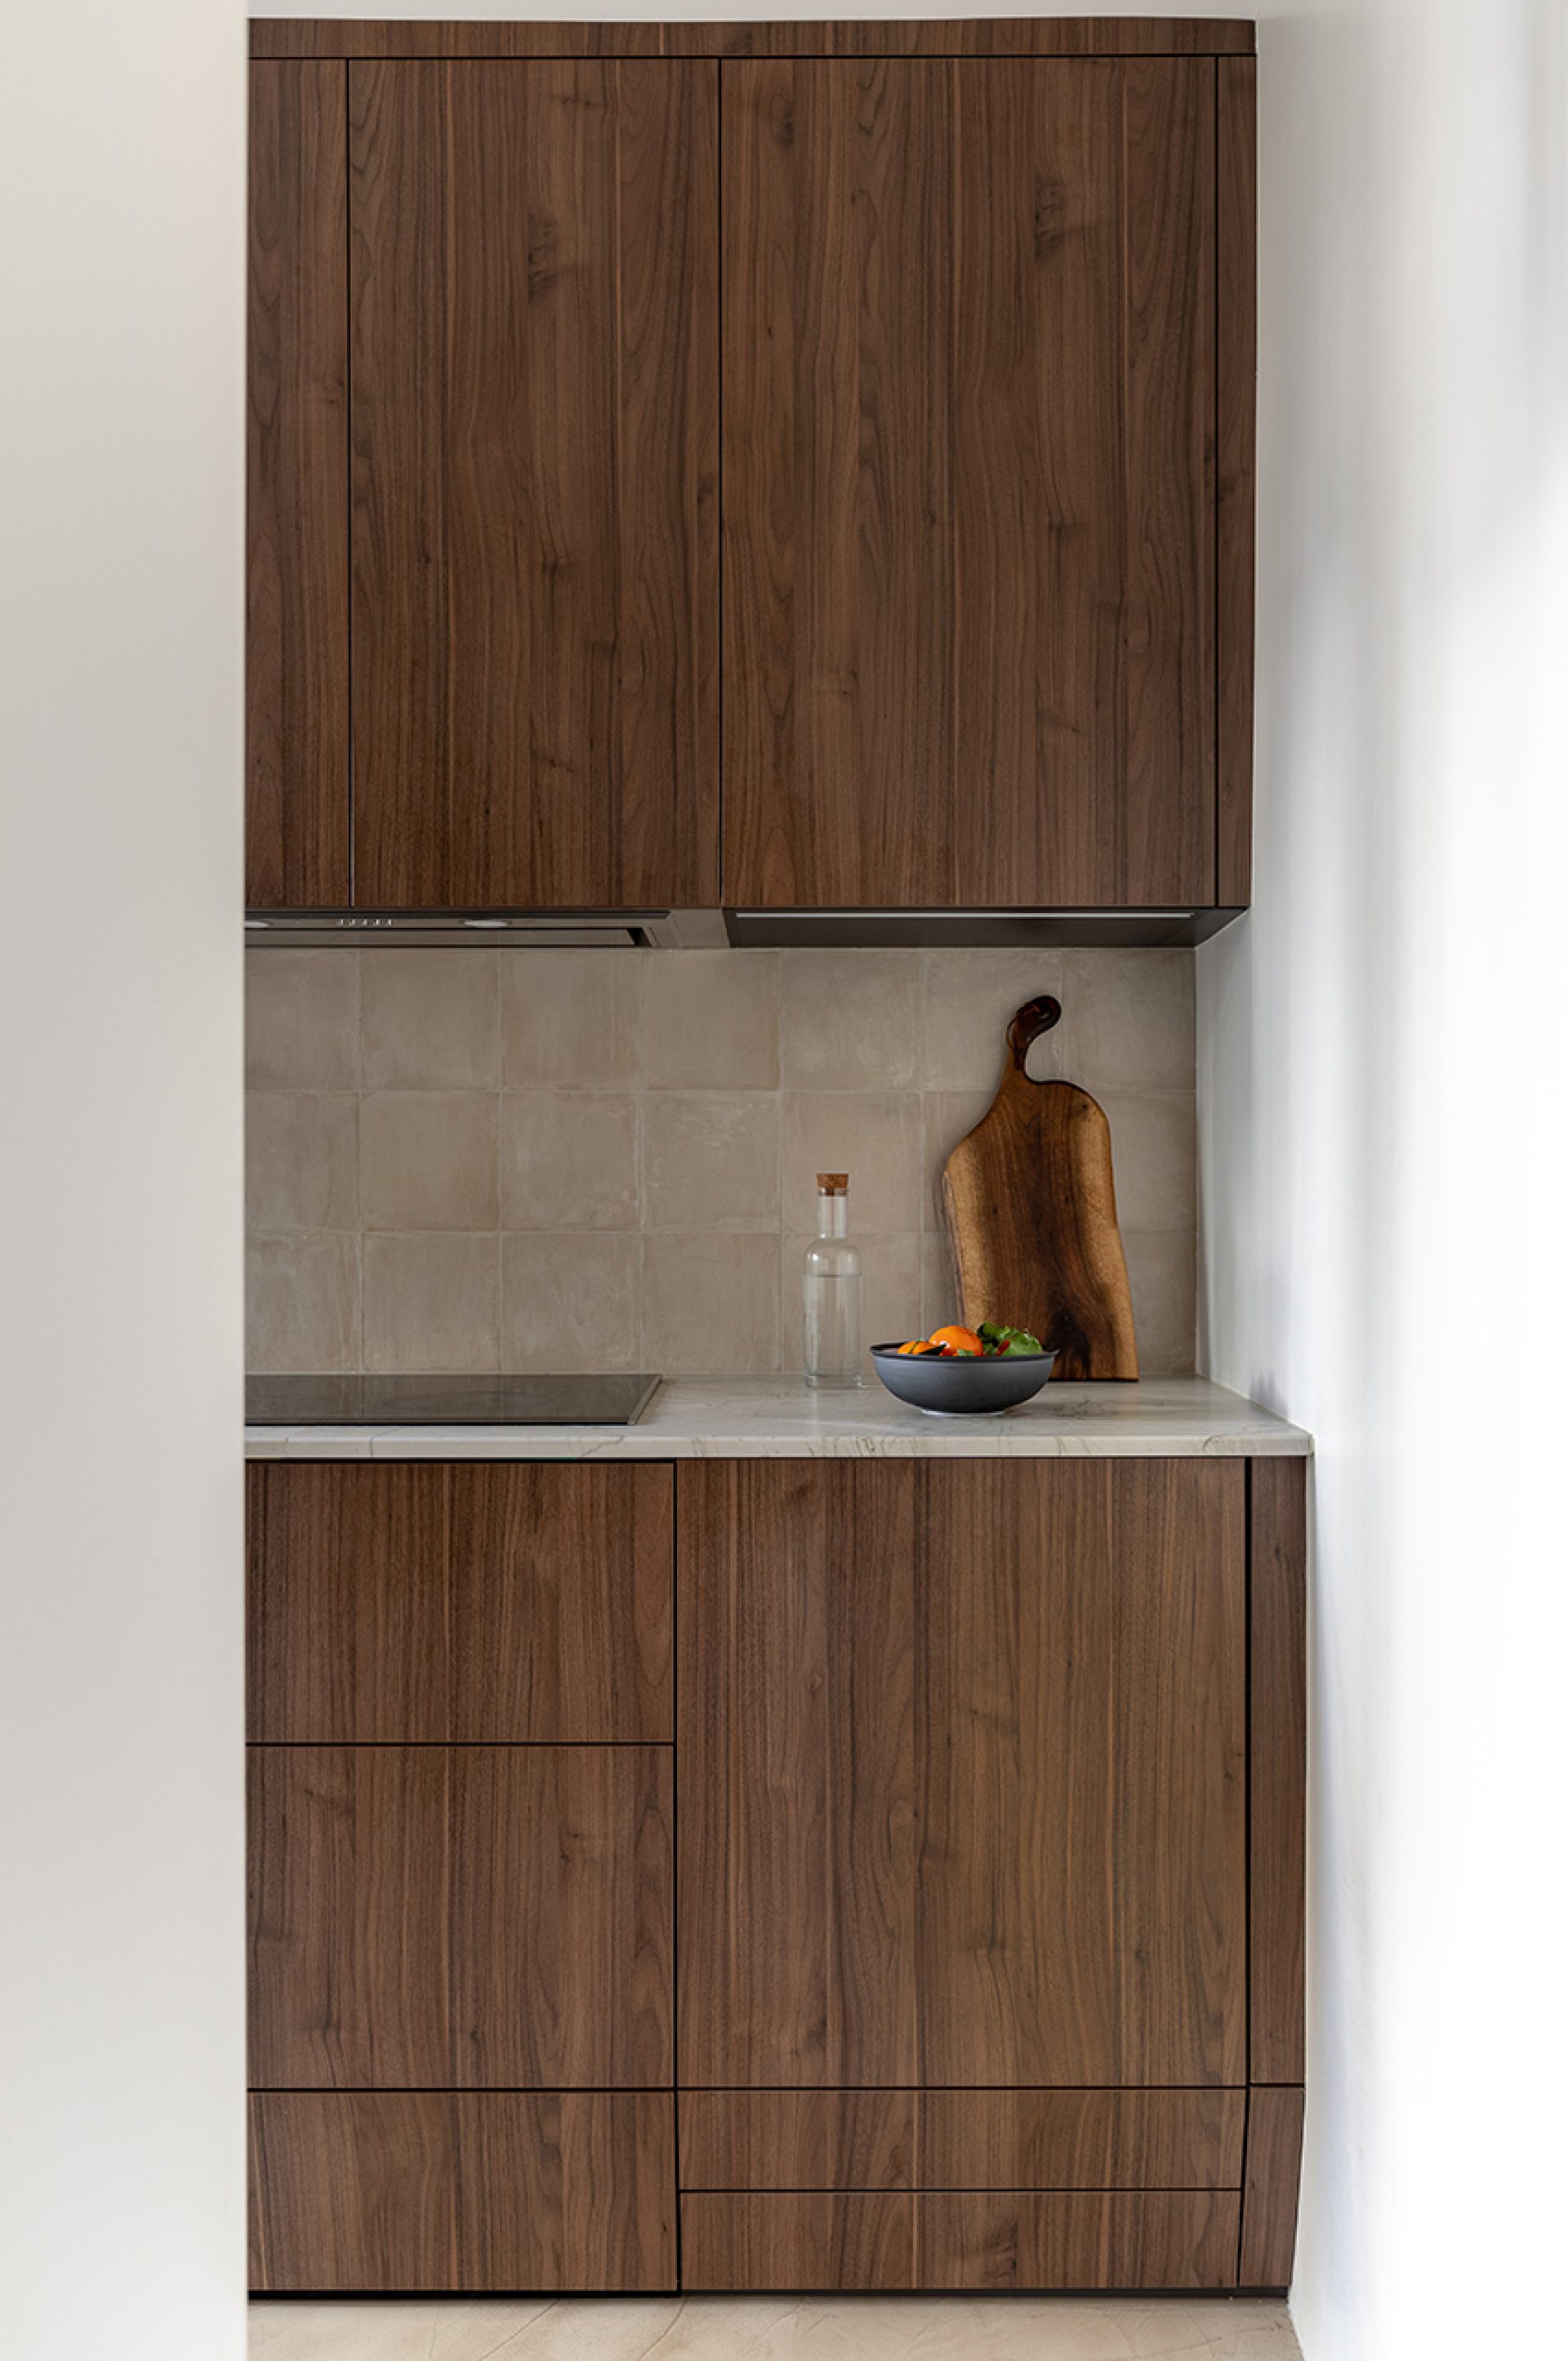  Façades de cuisine motif Noyer Vertical, plan de travail en granit et crédence en carreaux d’argile